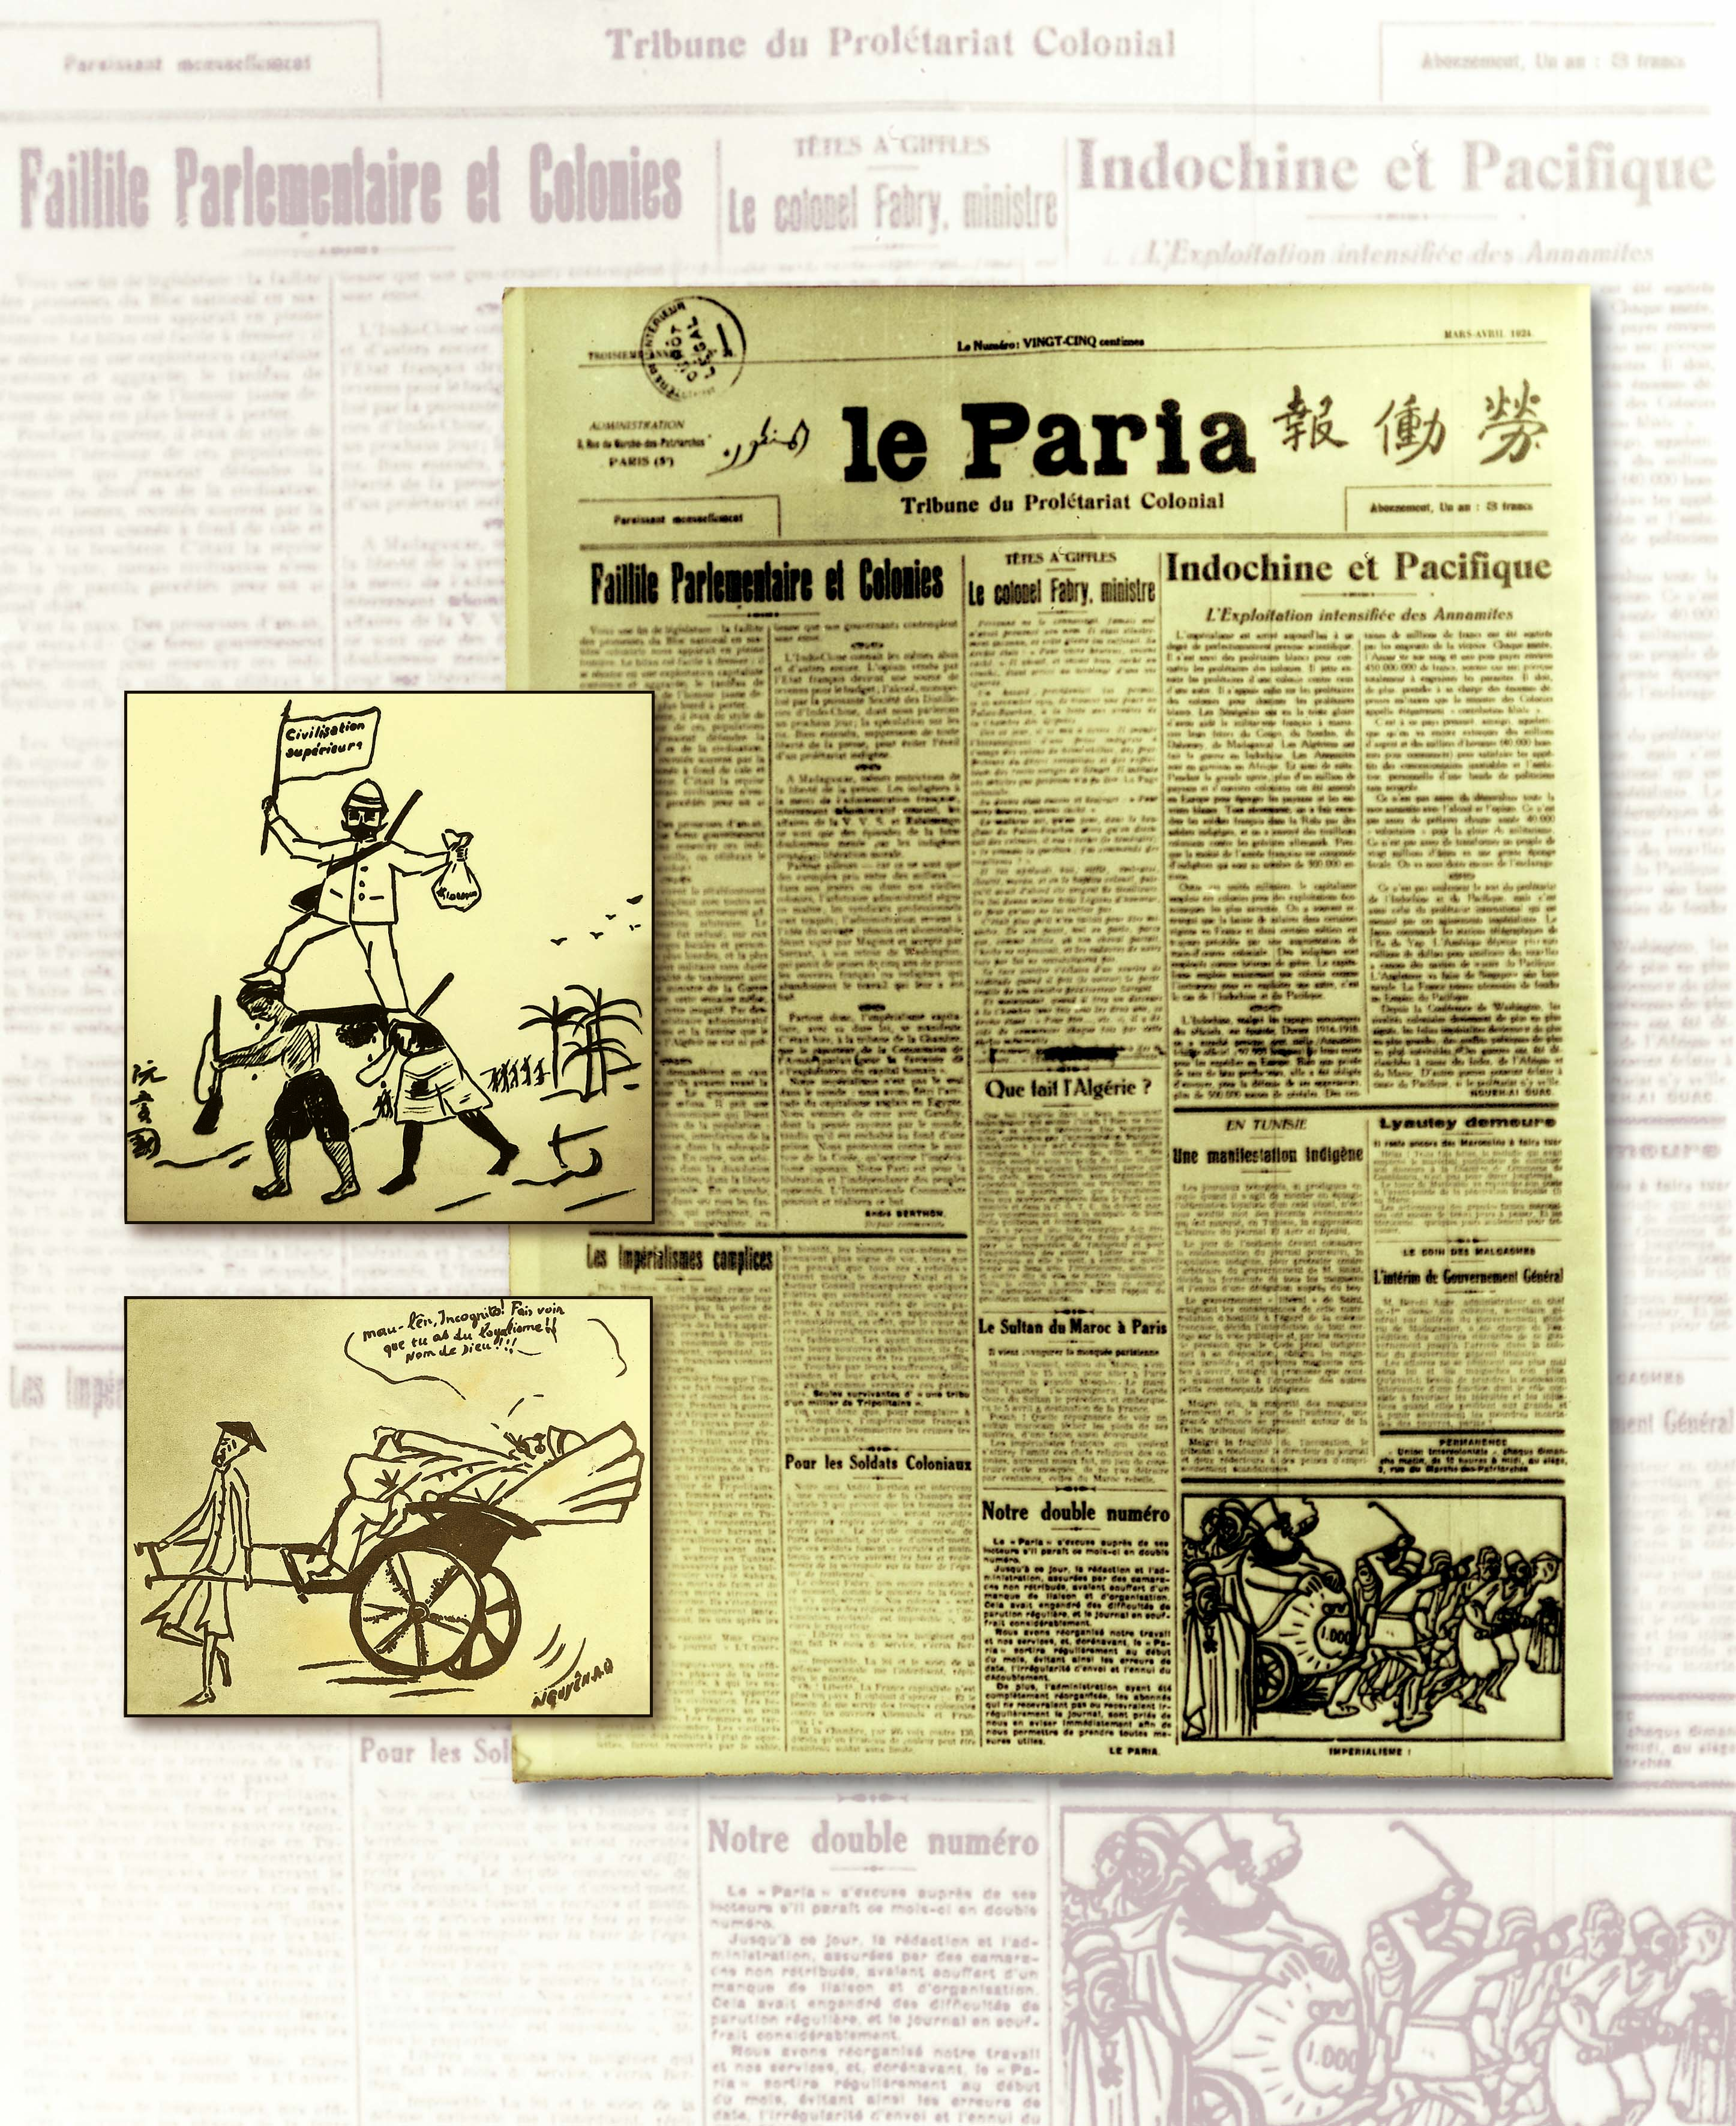 Báo Người cùng khổ (Le Paria), Cơ quan Ngôn luận của Hội Liên hiệp thuộc địa do Nguyễn Ái Quốc và một số nhà cách mạng sáng lập, phát hành trong những năm 1922-1926 (Số 24, tháng 4/1924)